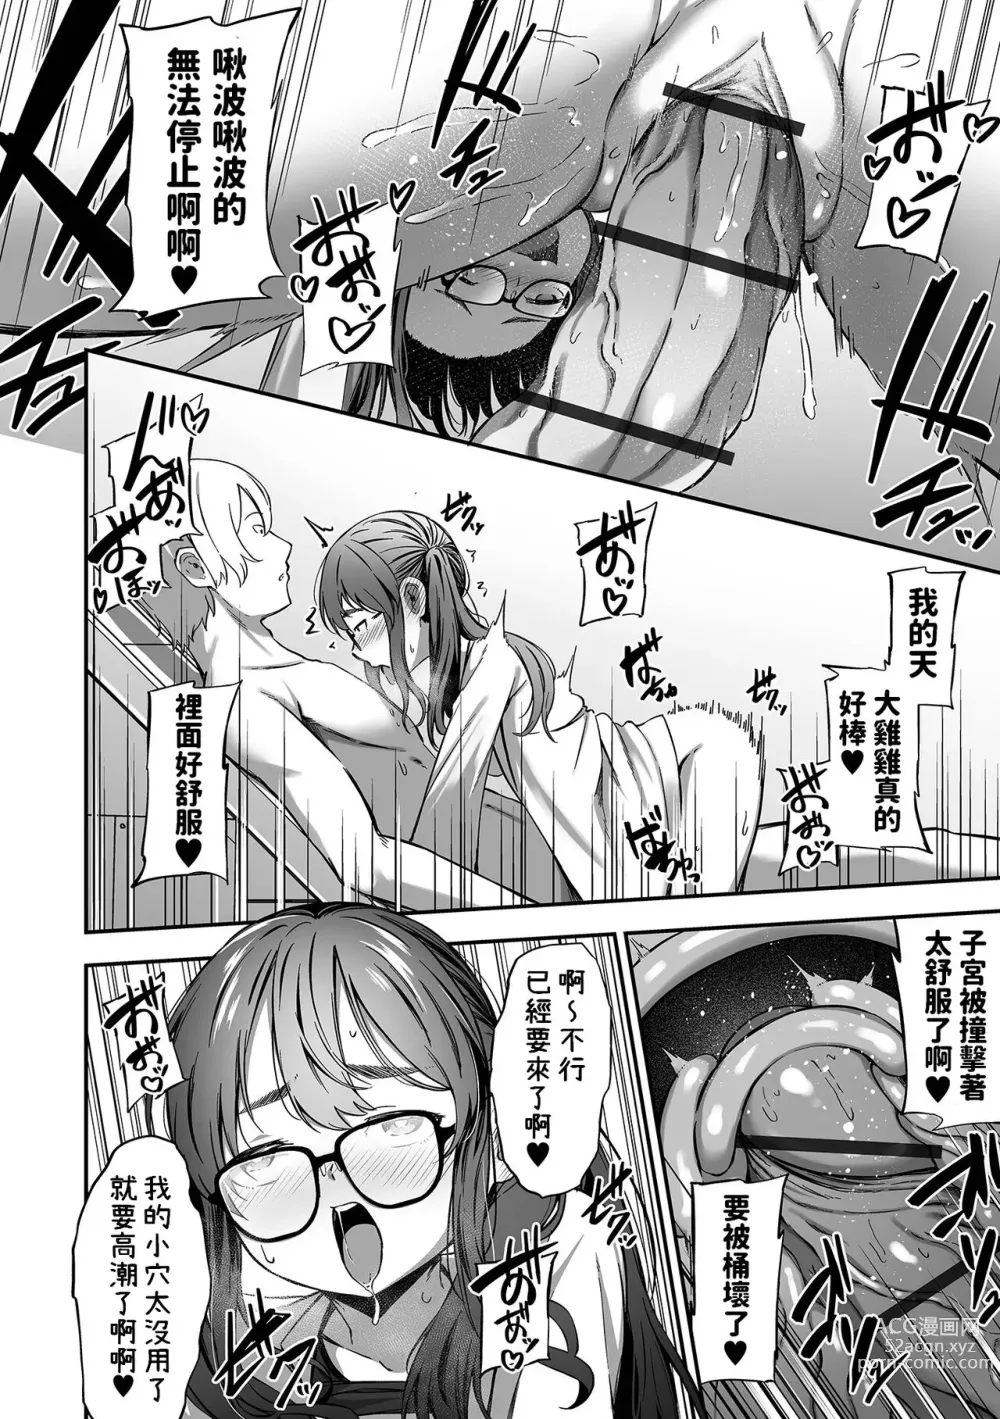 Page 8 of manga Shuumatsu no Sei Jijou